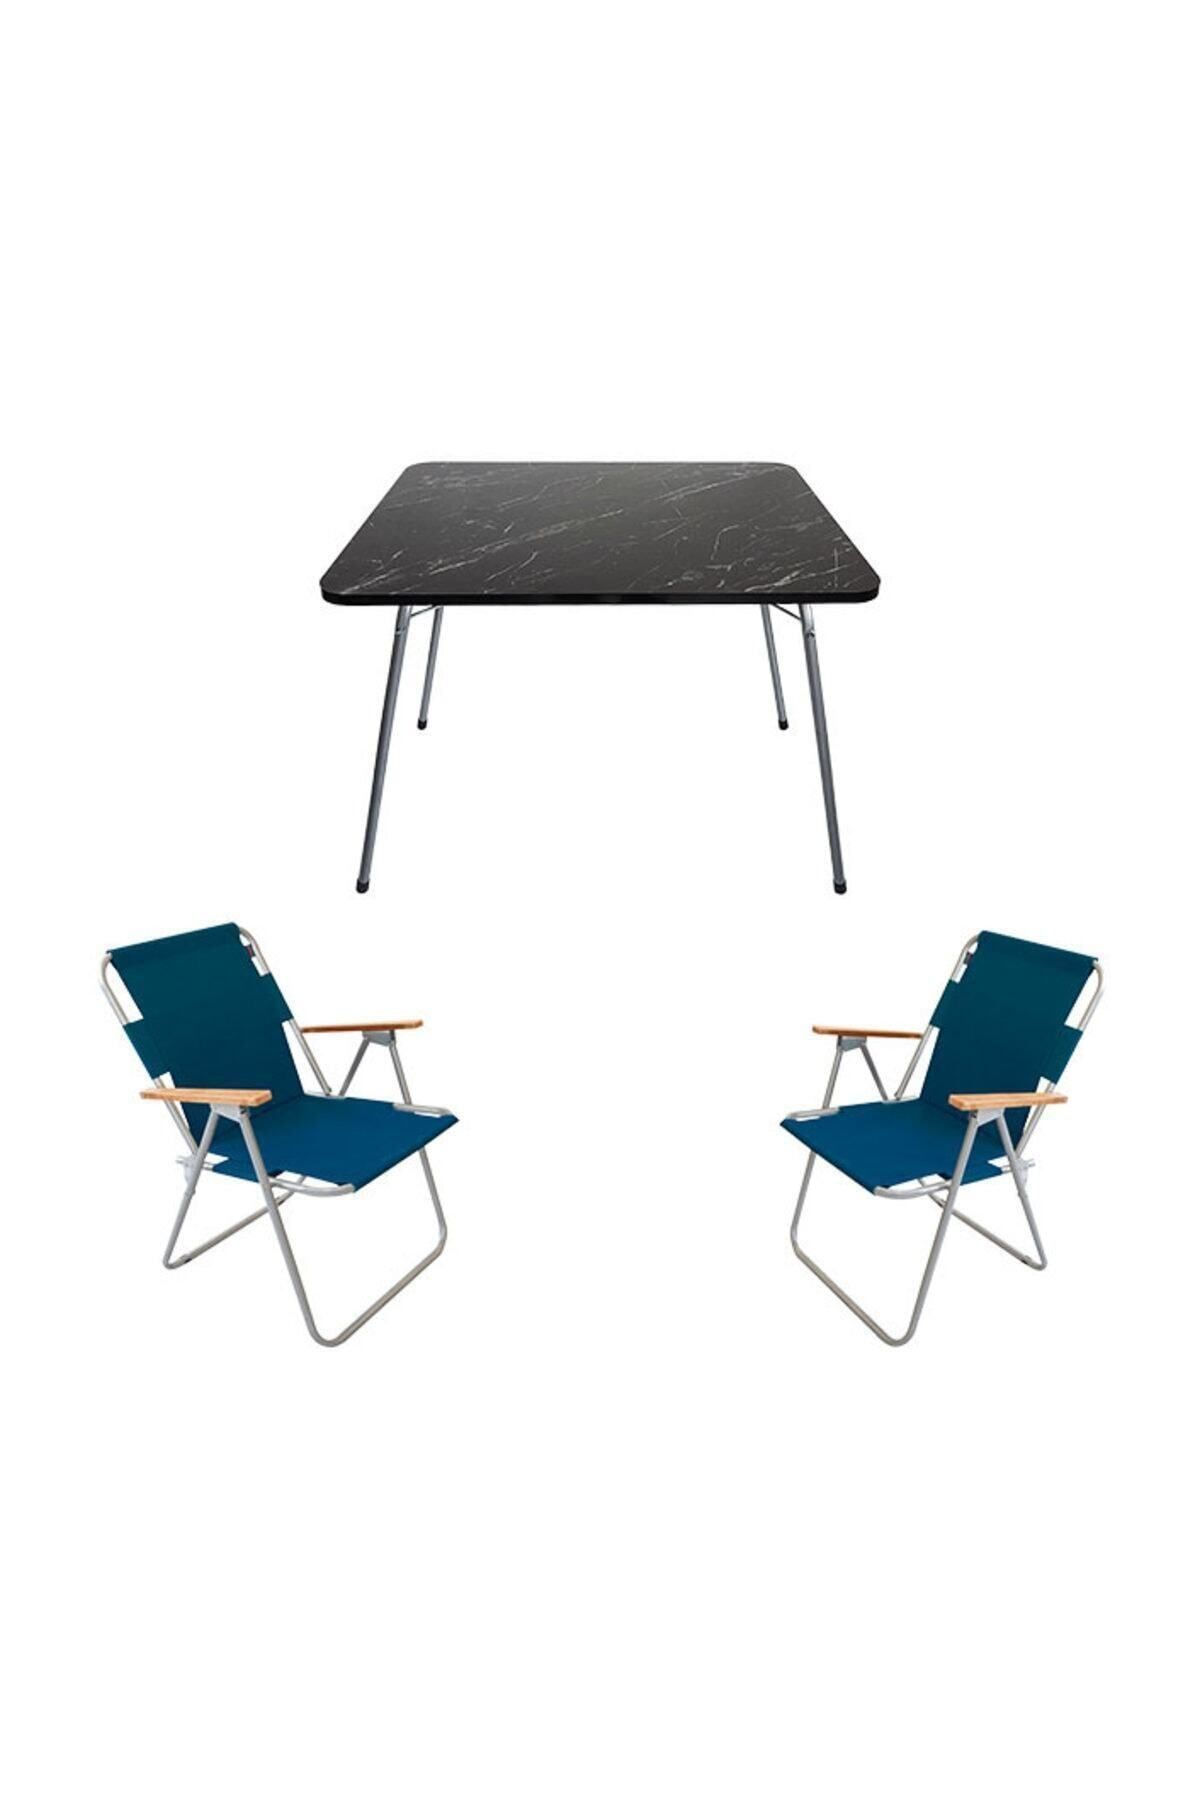 Bofigo Granit Katlanır Masa + 2 Adet Katlanır Sandalye Mavi